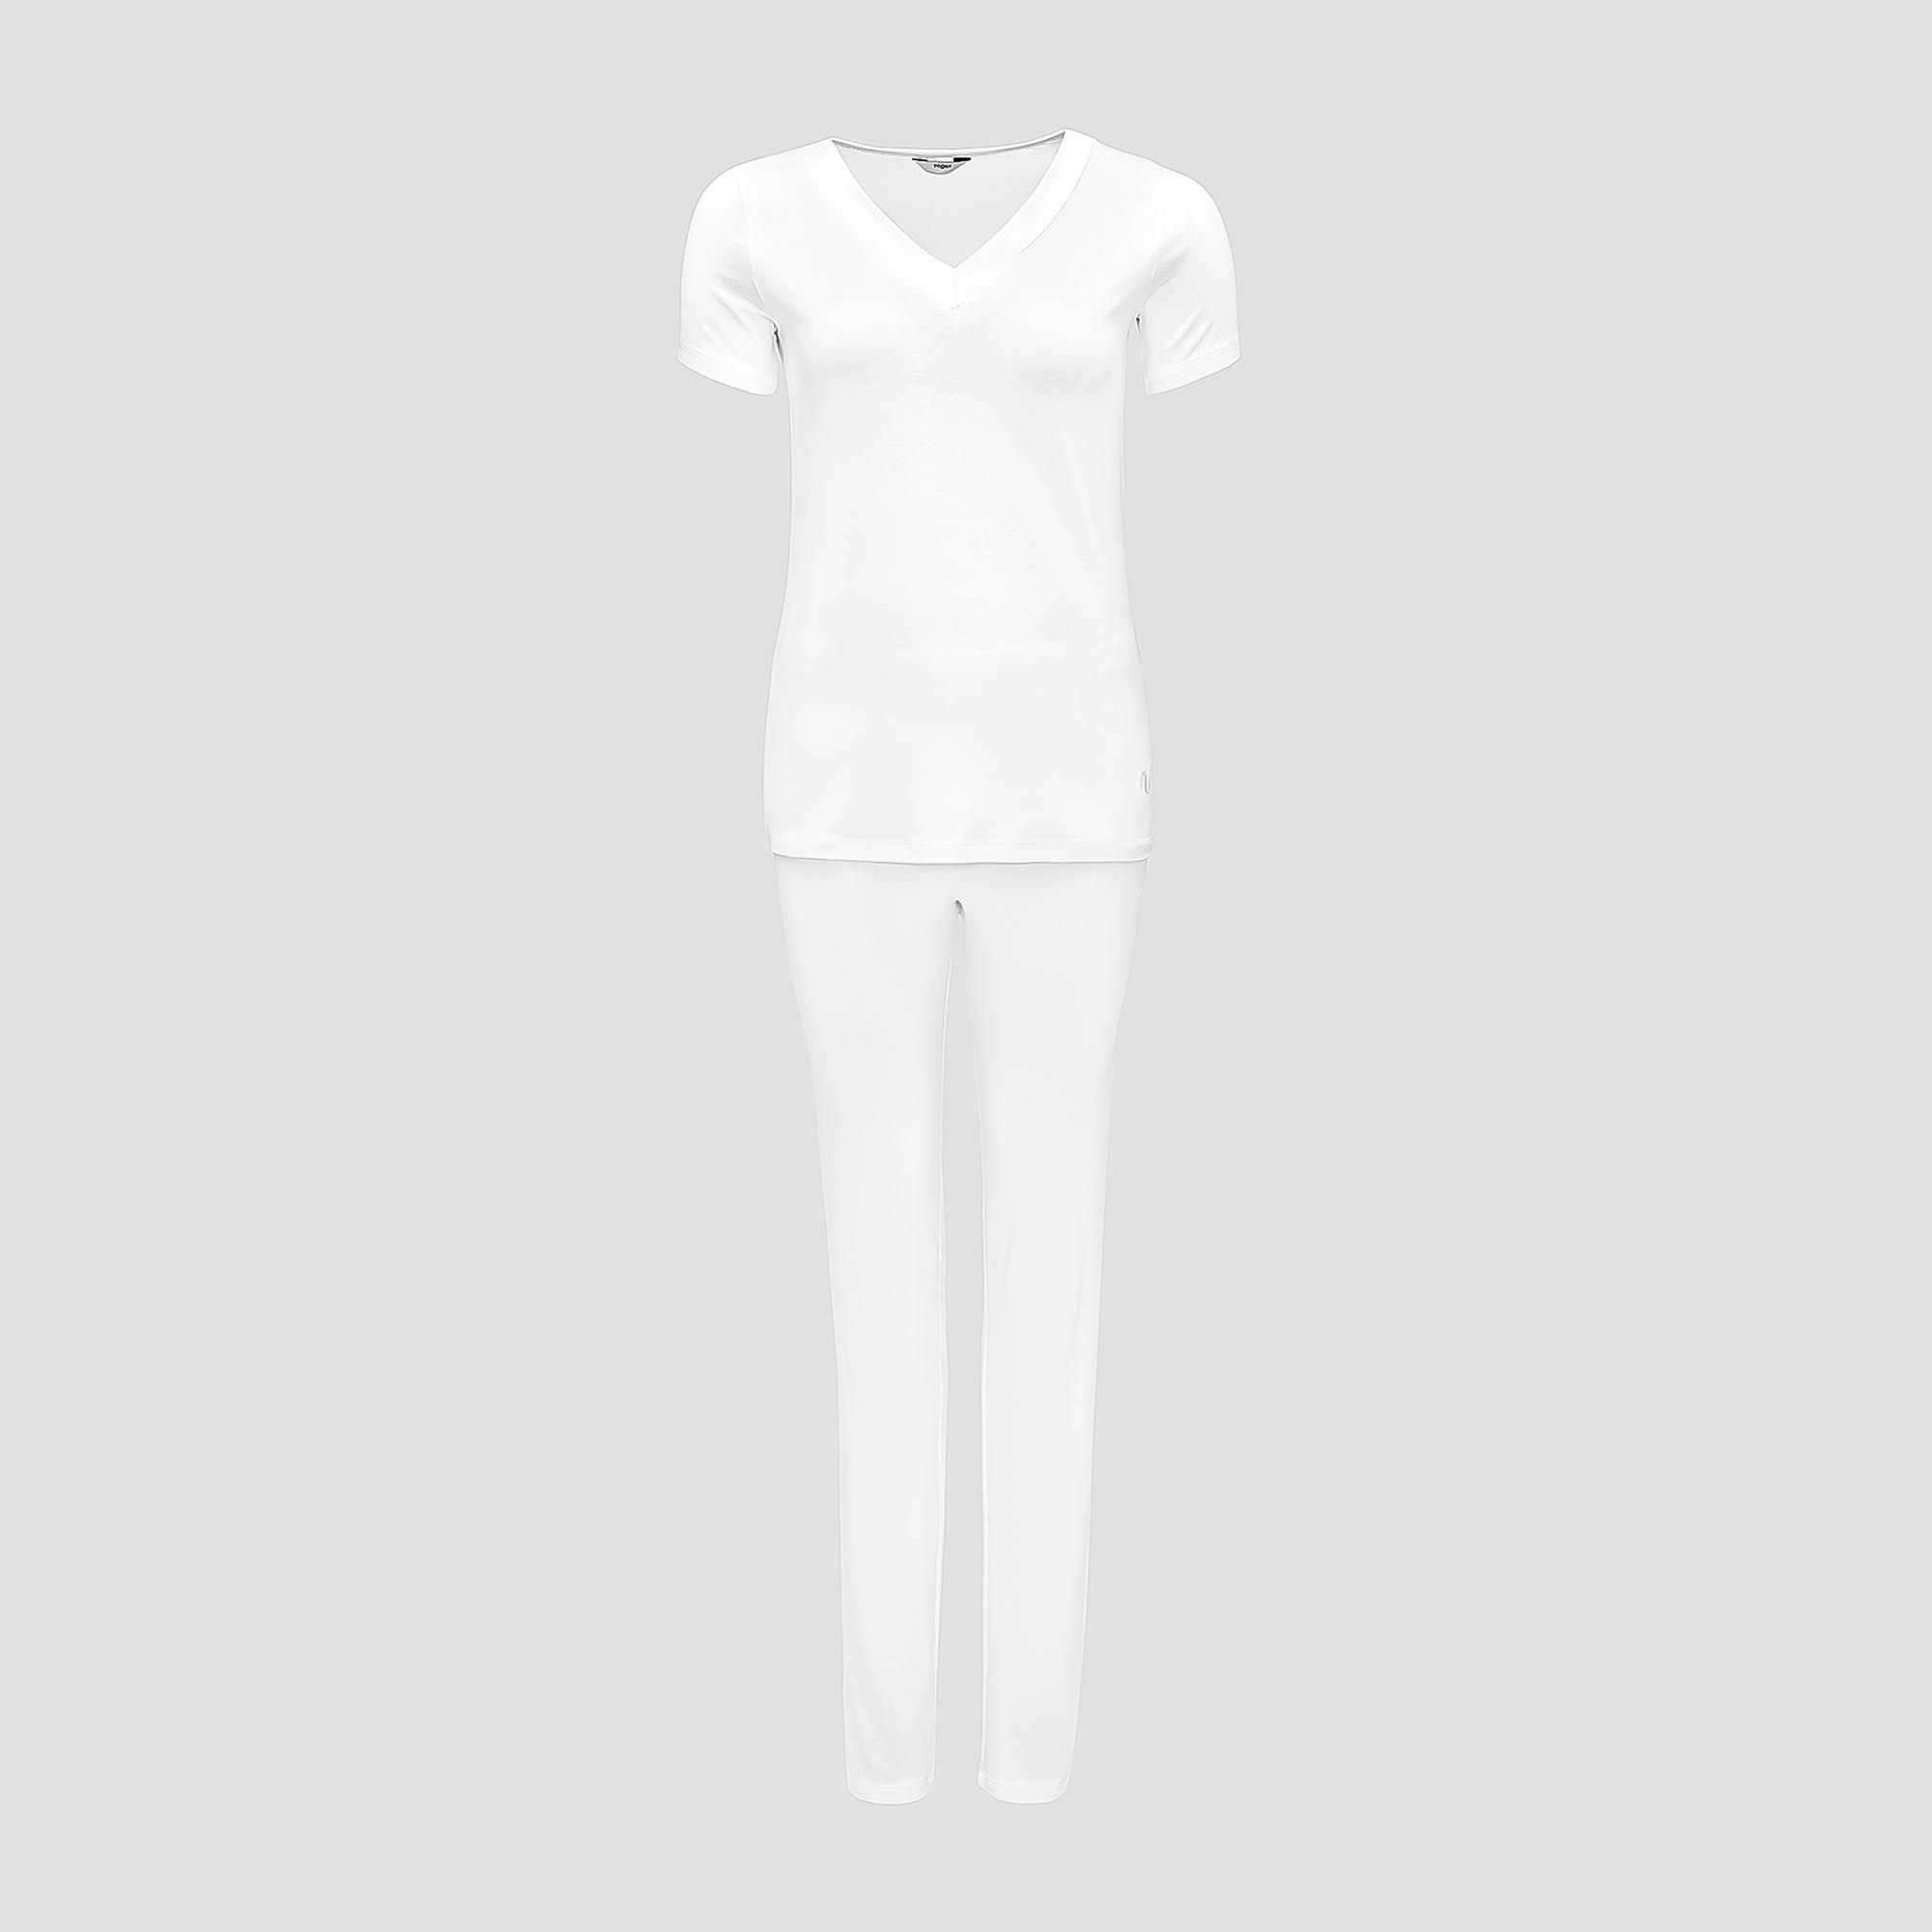 Пижама Togas Ингелла белая женская S(44) 2 предмета пижама джемпер брюки